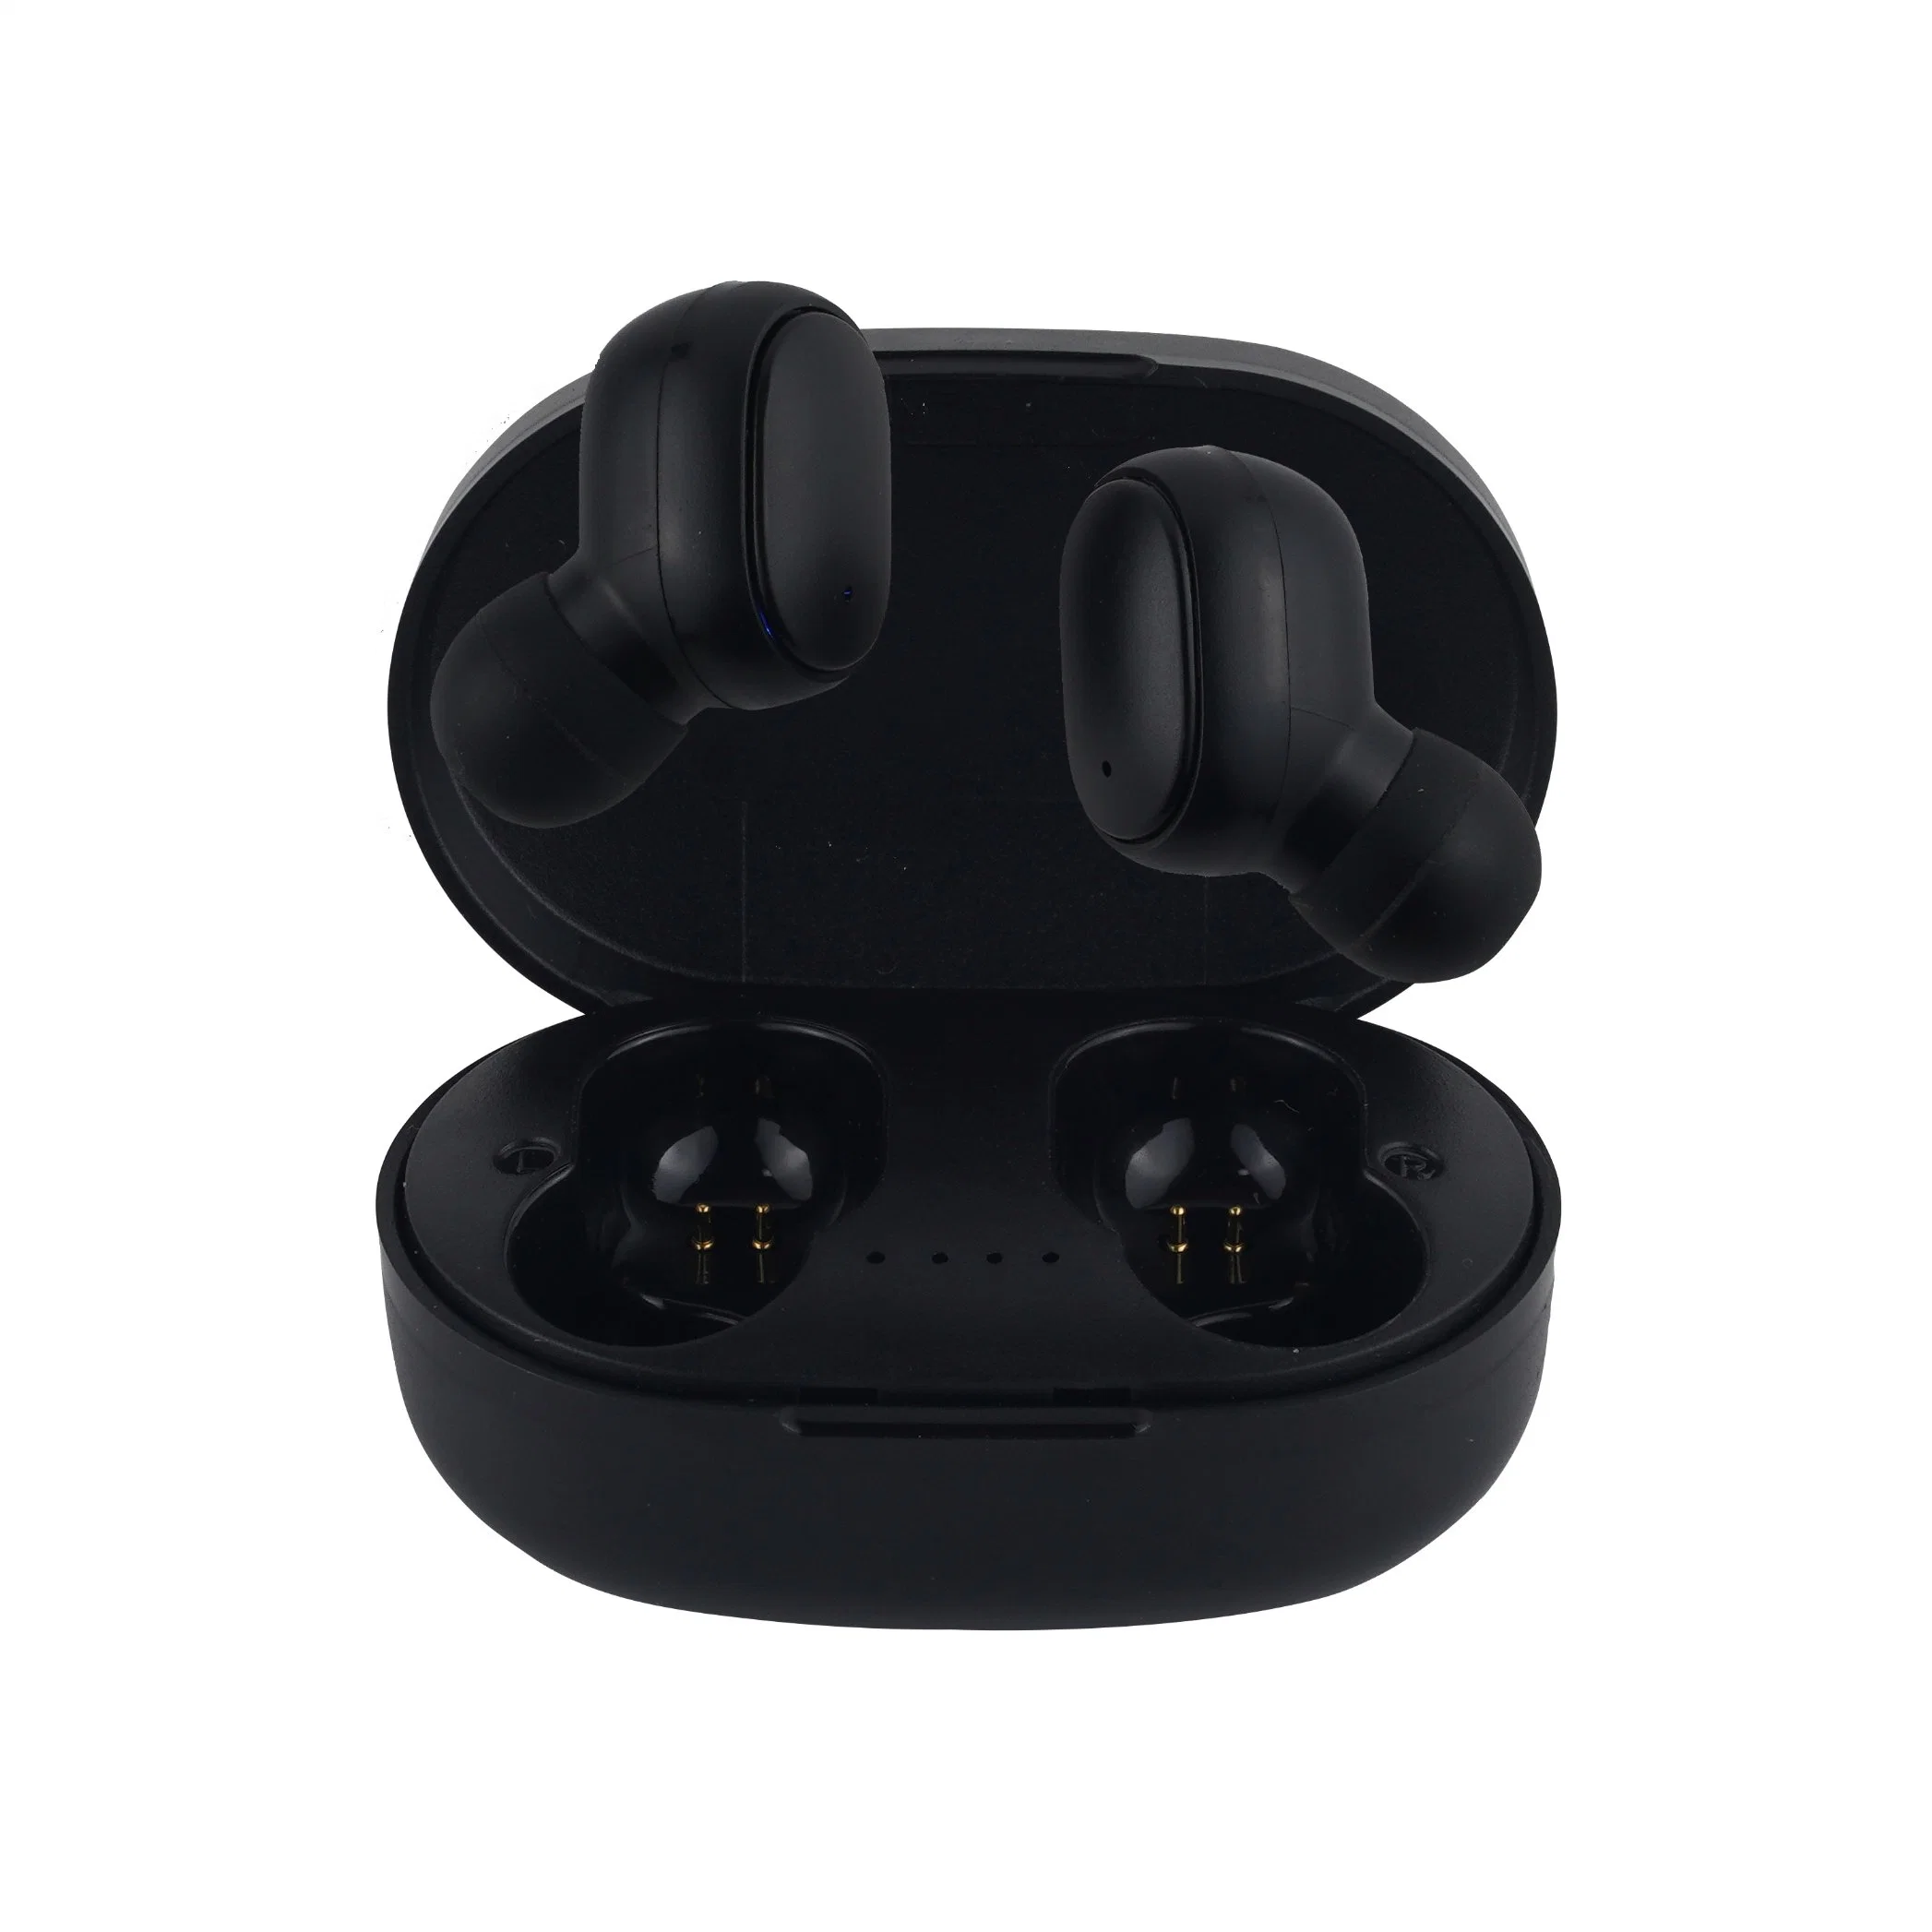 سماعات الأذن 1 في الأذن: سماعة رأس Bluetooth ثنائية الأذن لسماعة الرأس اللايدوية لأغلفة الهواء لسماعات أذن سوني مع قابس سماعات الأذن للتحكم في السمع الرقمي للتصوير اللاسلكي